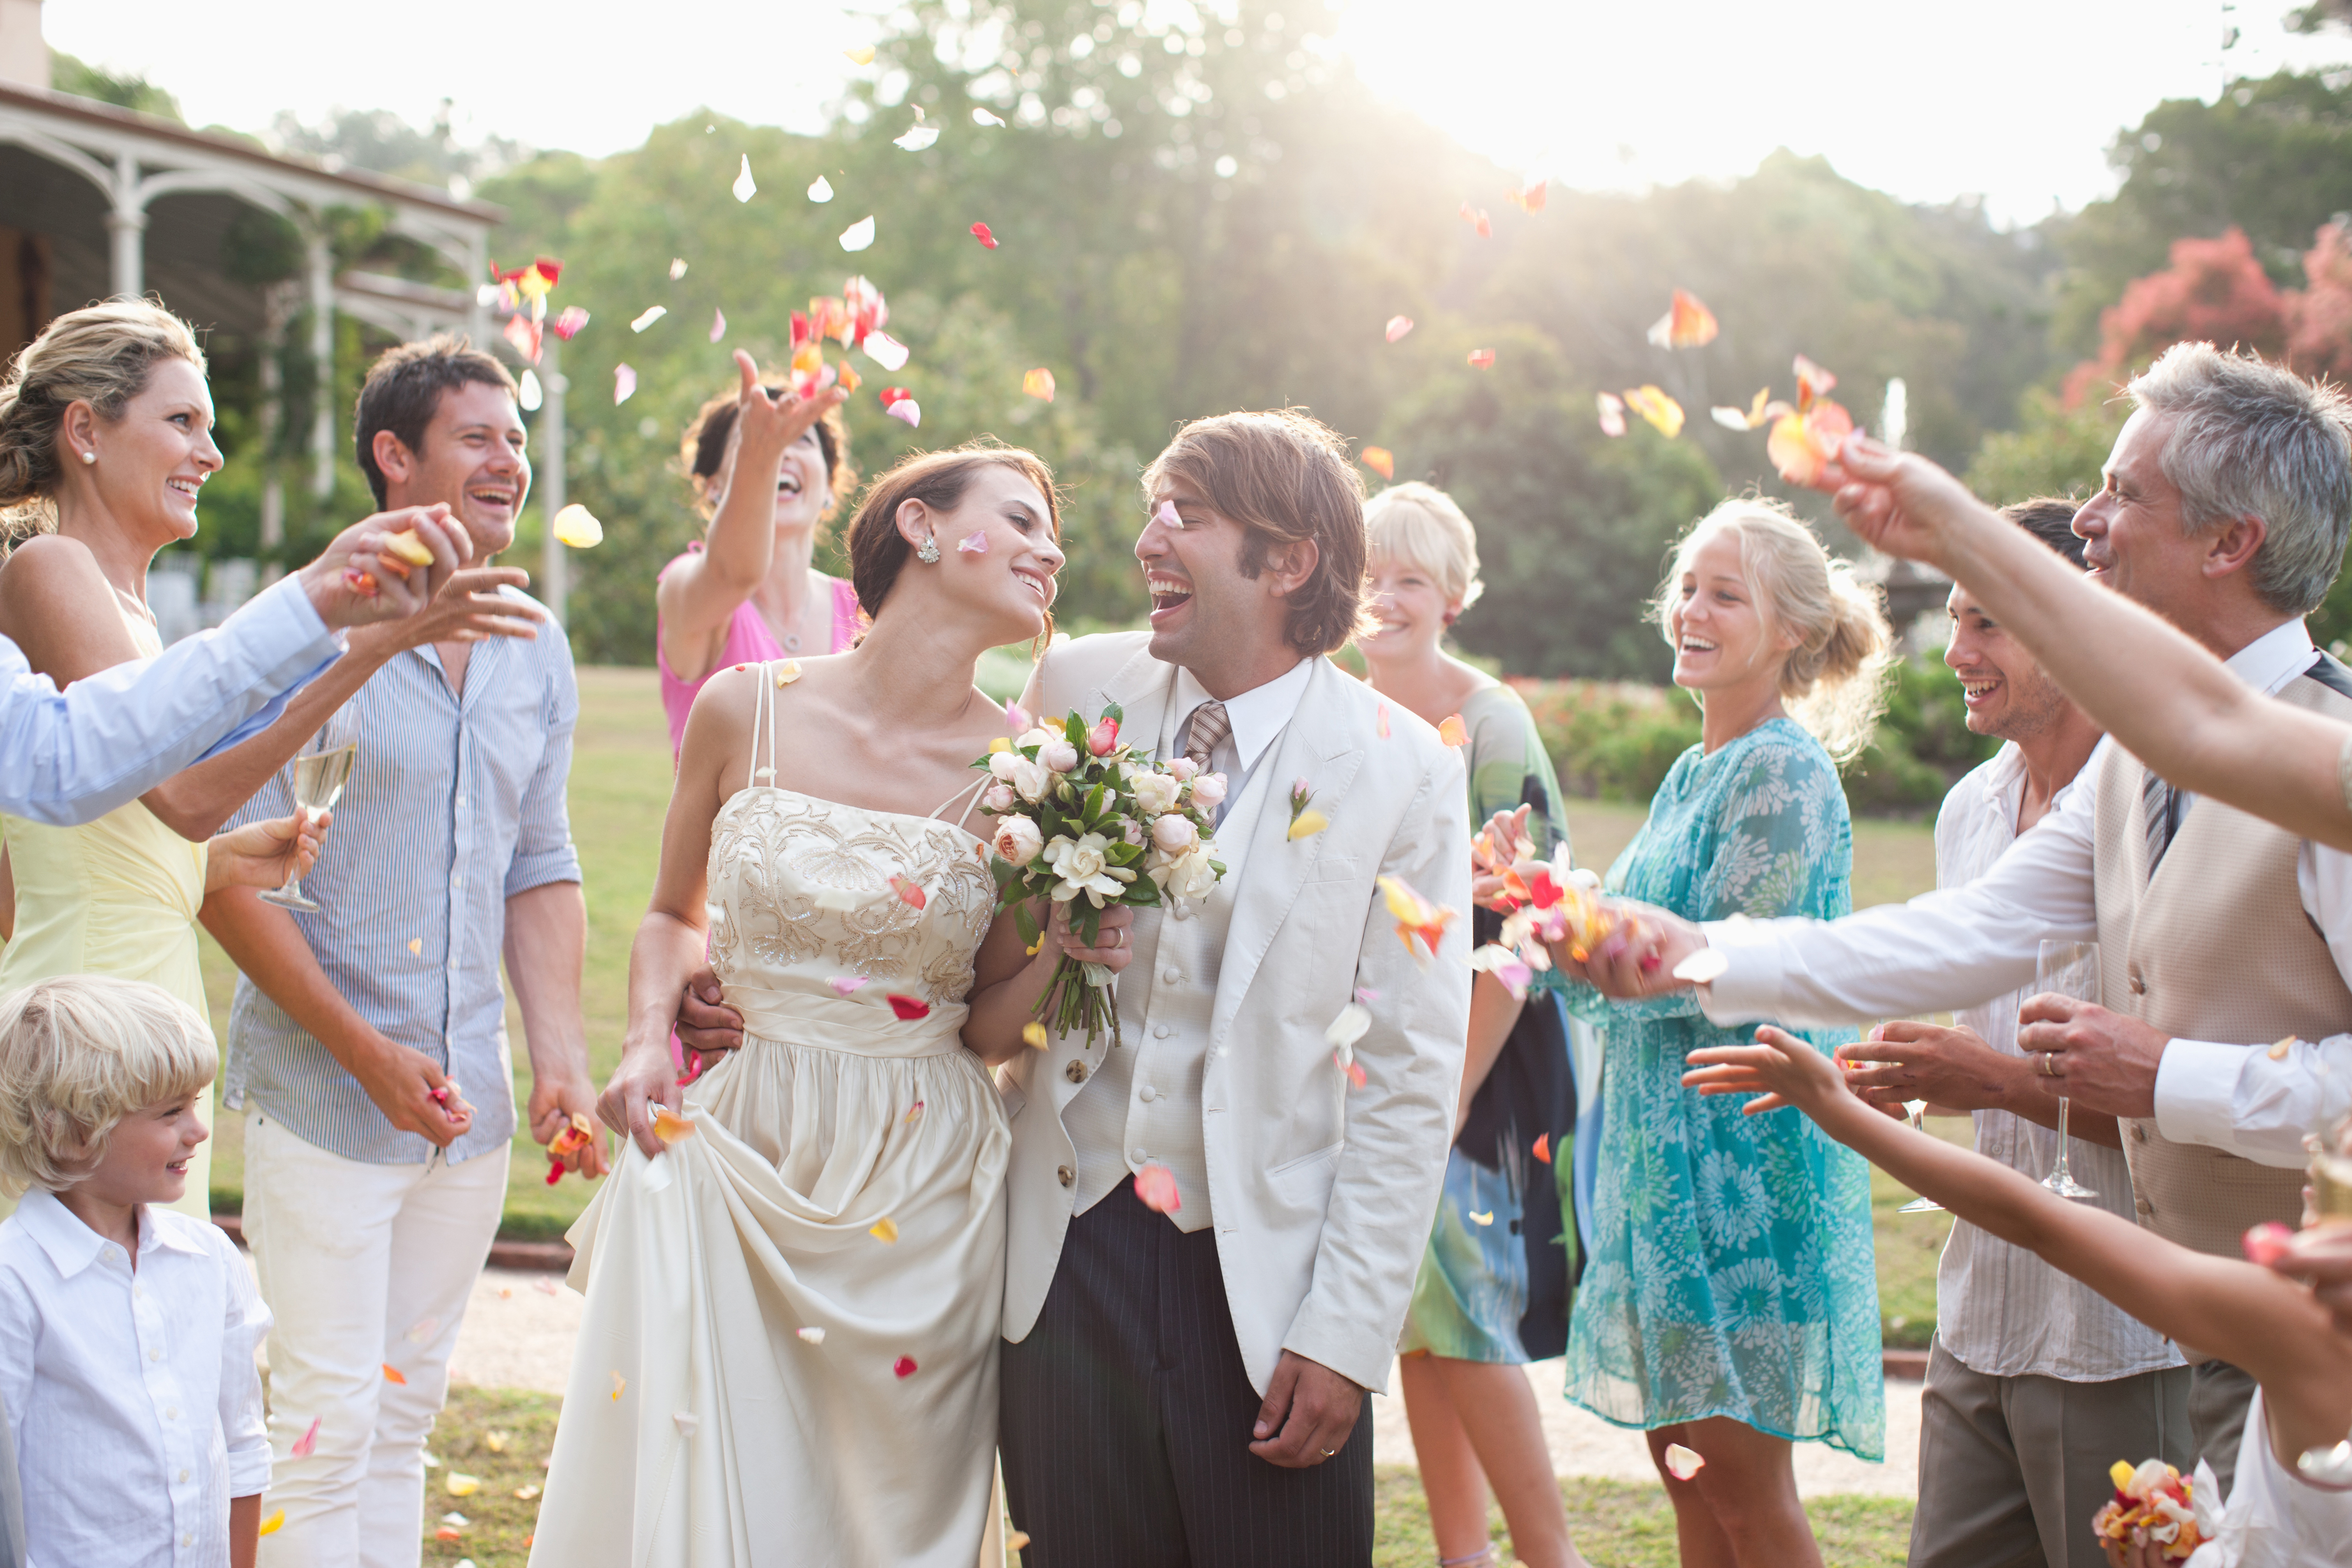 Les invités jettent des pétales de rose sur les mariés | Source : Getty Images